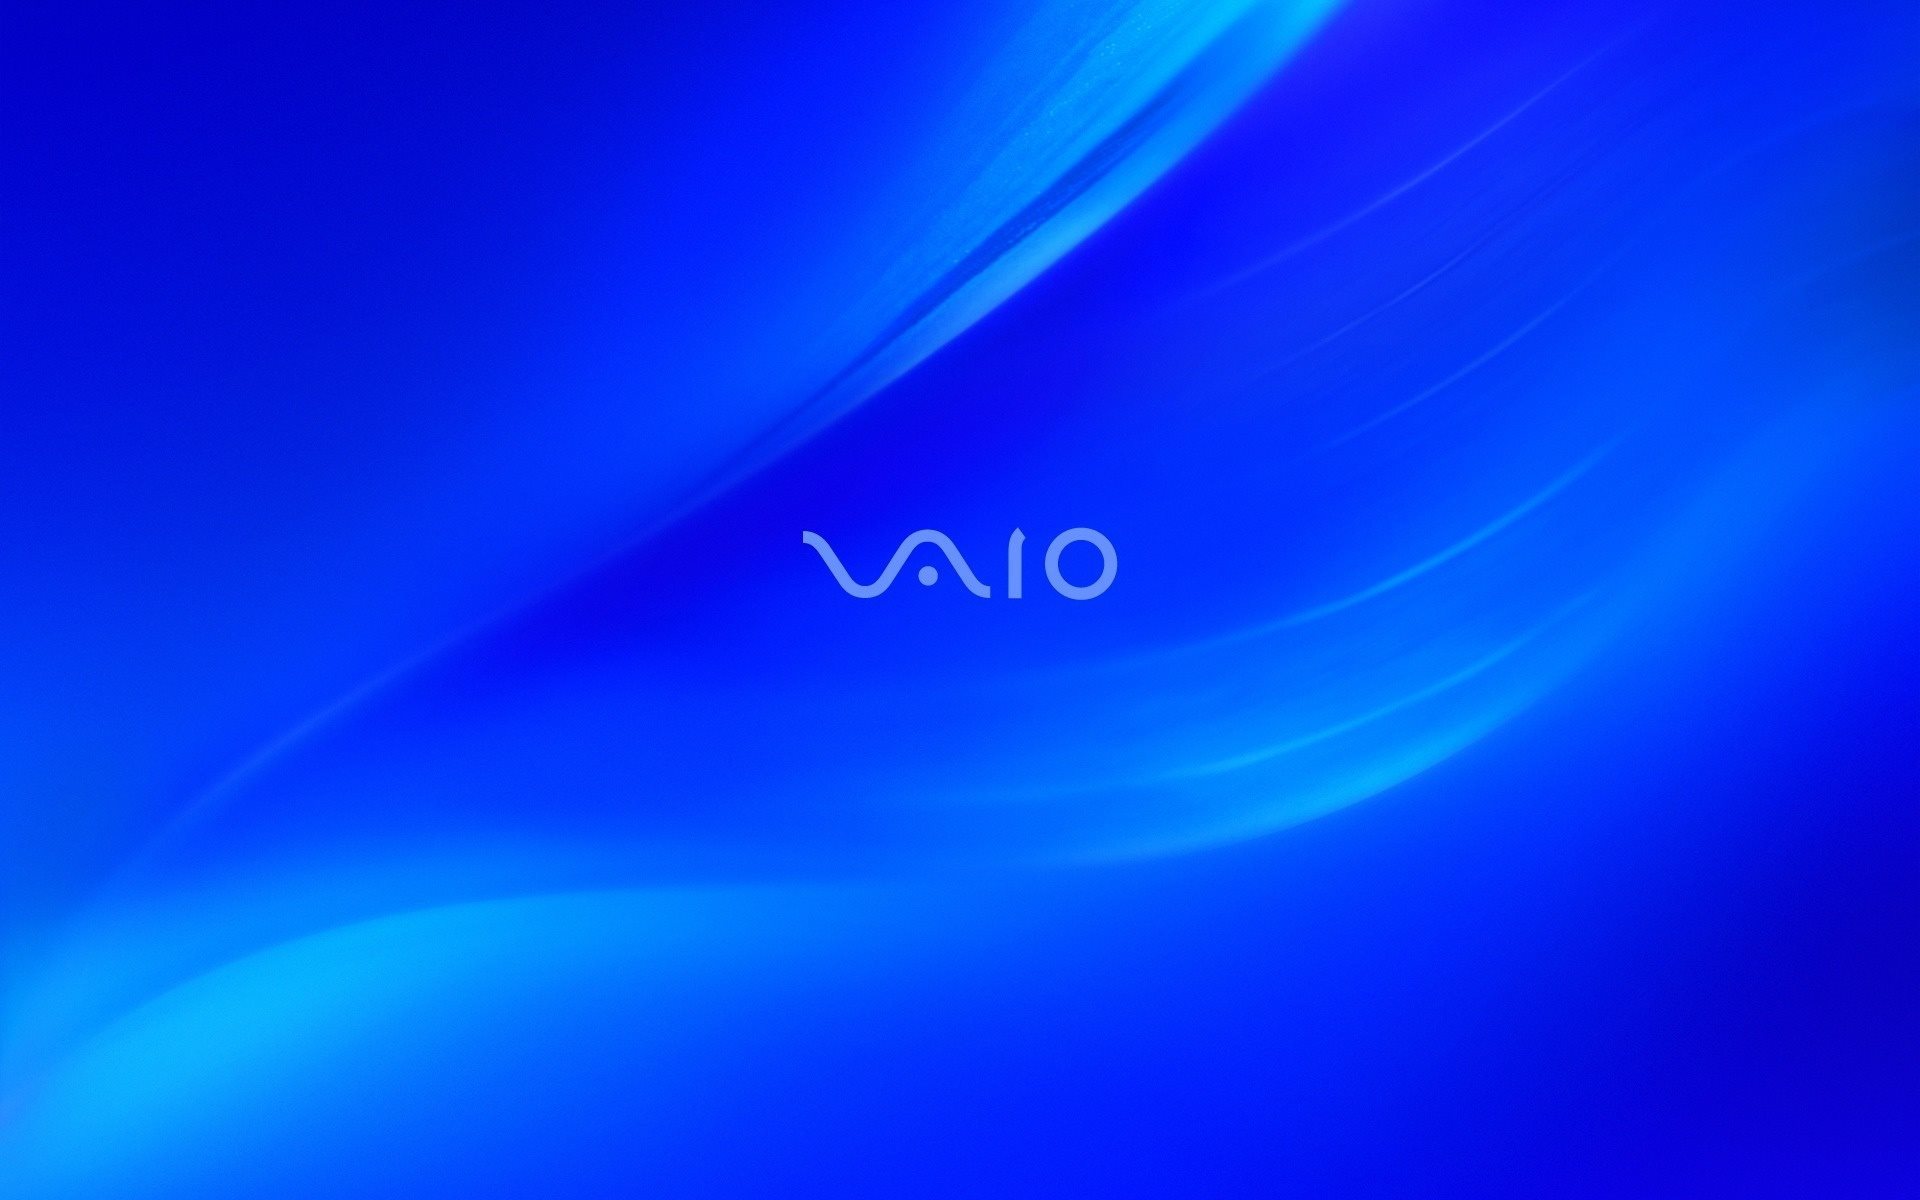 ダウンロード画像 ソニー Vaio 青色の背景 ロゴ 画面の解像度 19x10 壁紙デスクトップ上